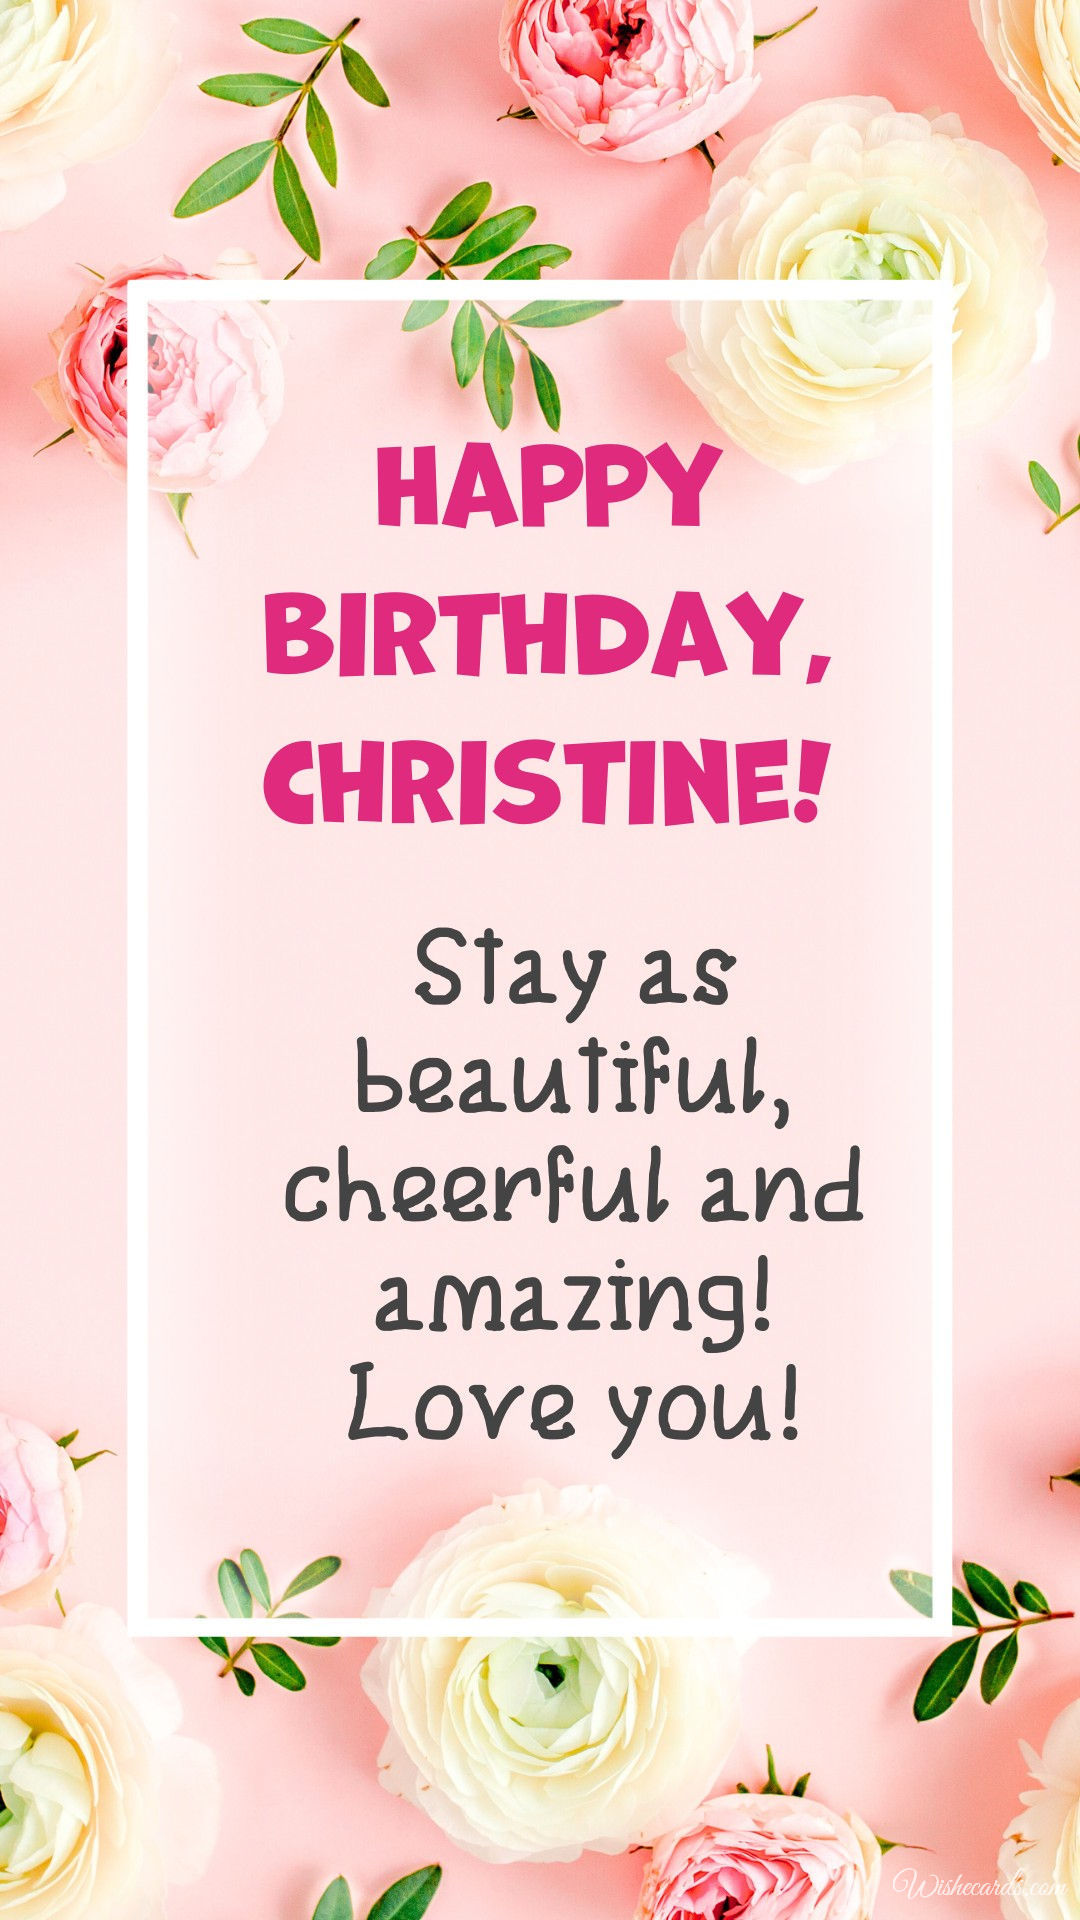 Happy Birthday to Christine